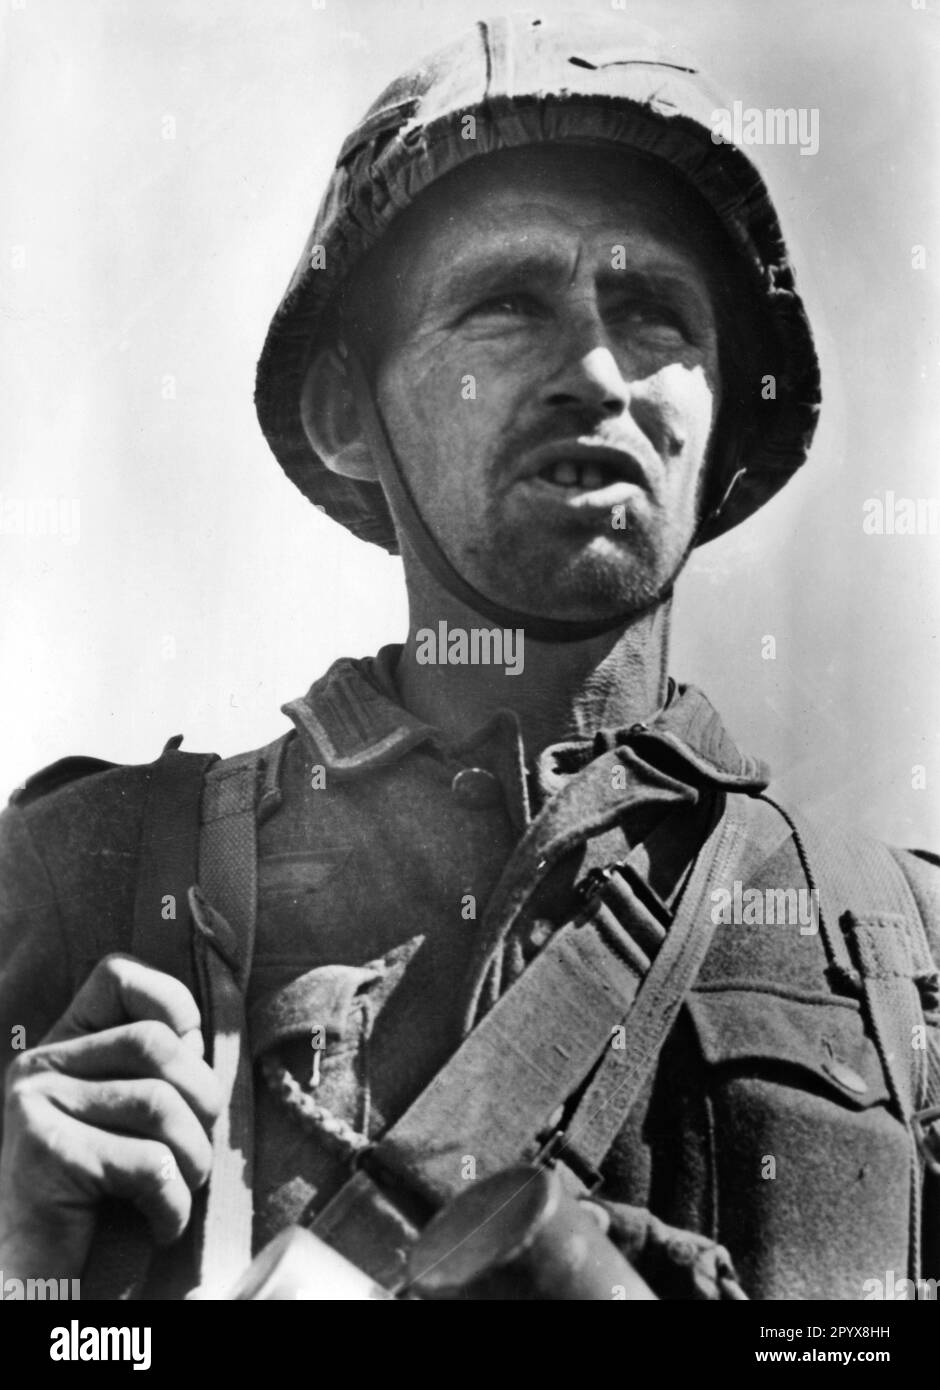 Soldat allemand combattant sur le fleuve Dniepr dans la partie sud du front est. Photo: Willerich. [traduction automatique] Banque D'Images